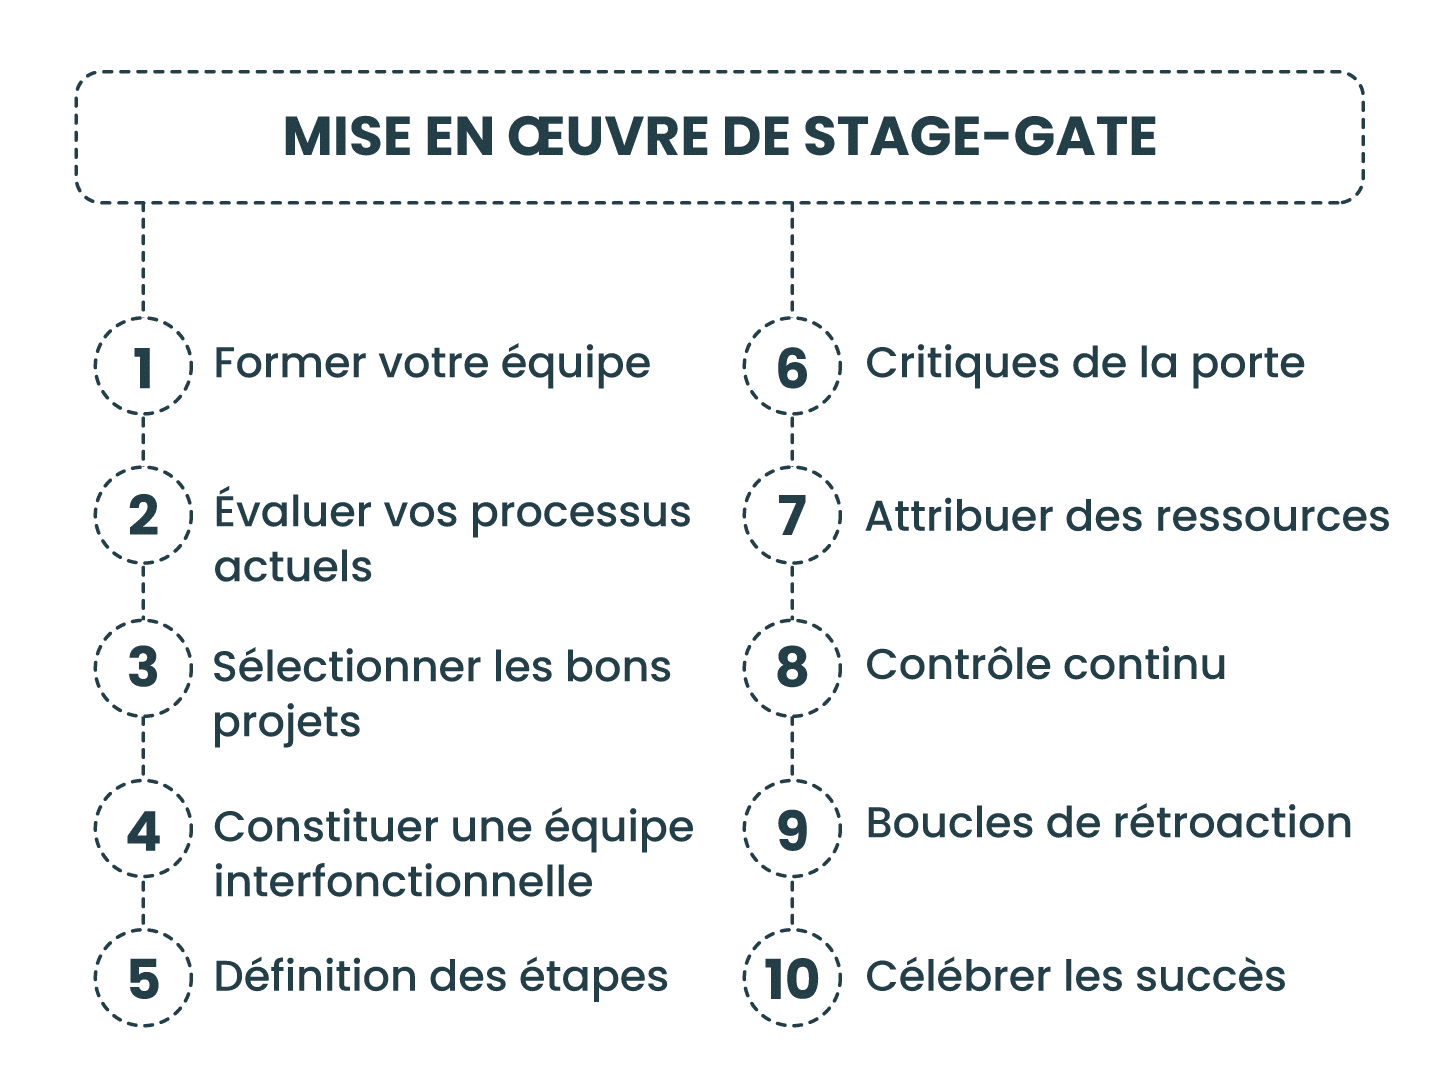 Mise en œuvre de Stage-Gate dans votre organisation